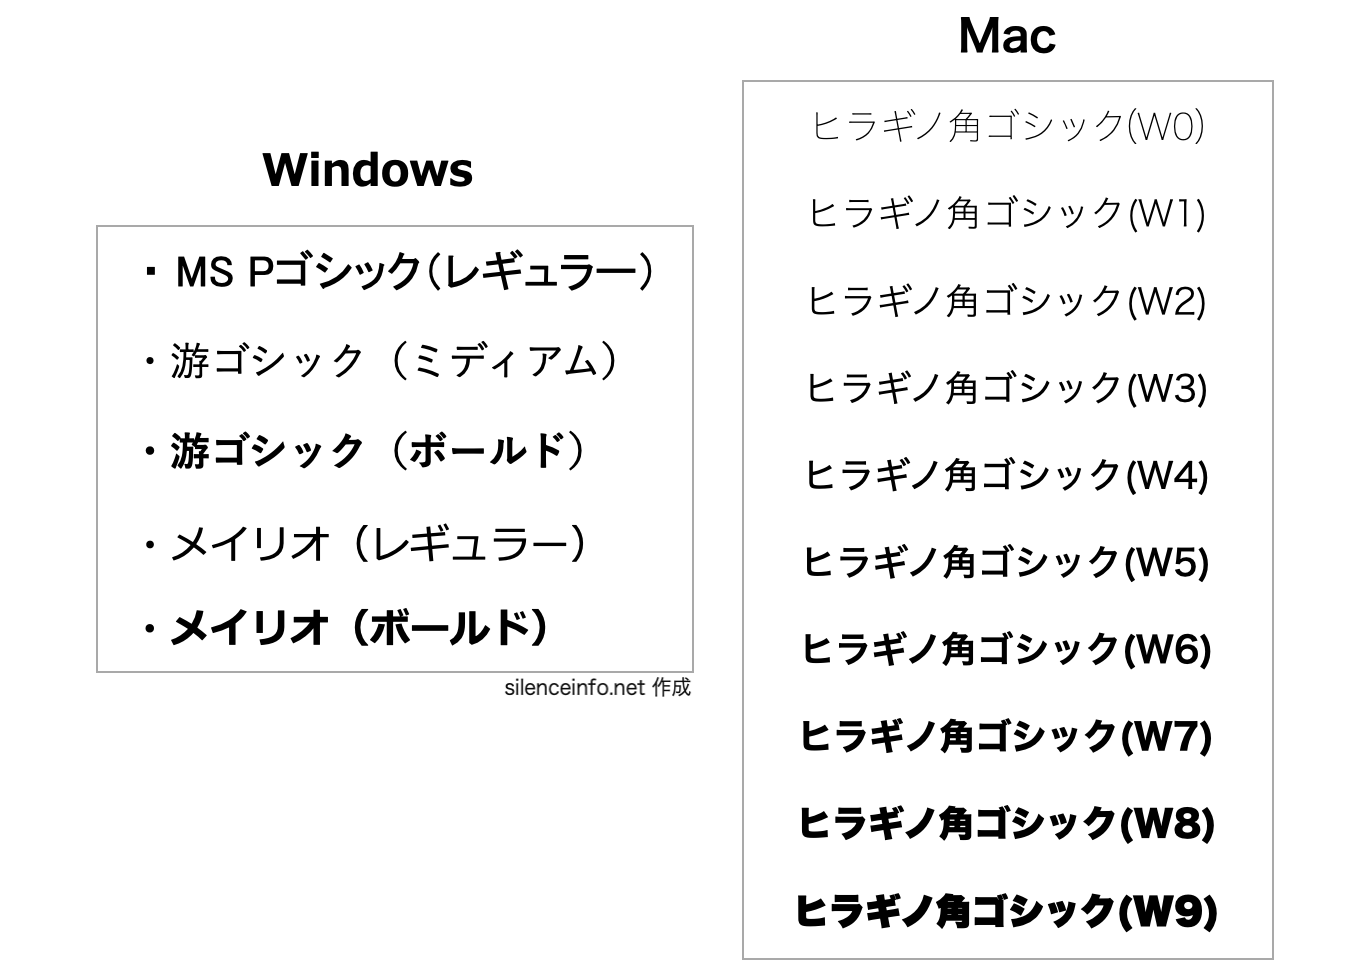 スライドで使うフォントの例を示した図（WindowsとMac）